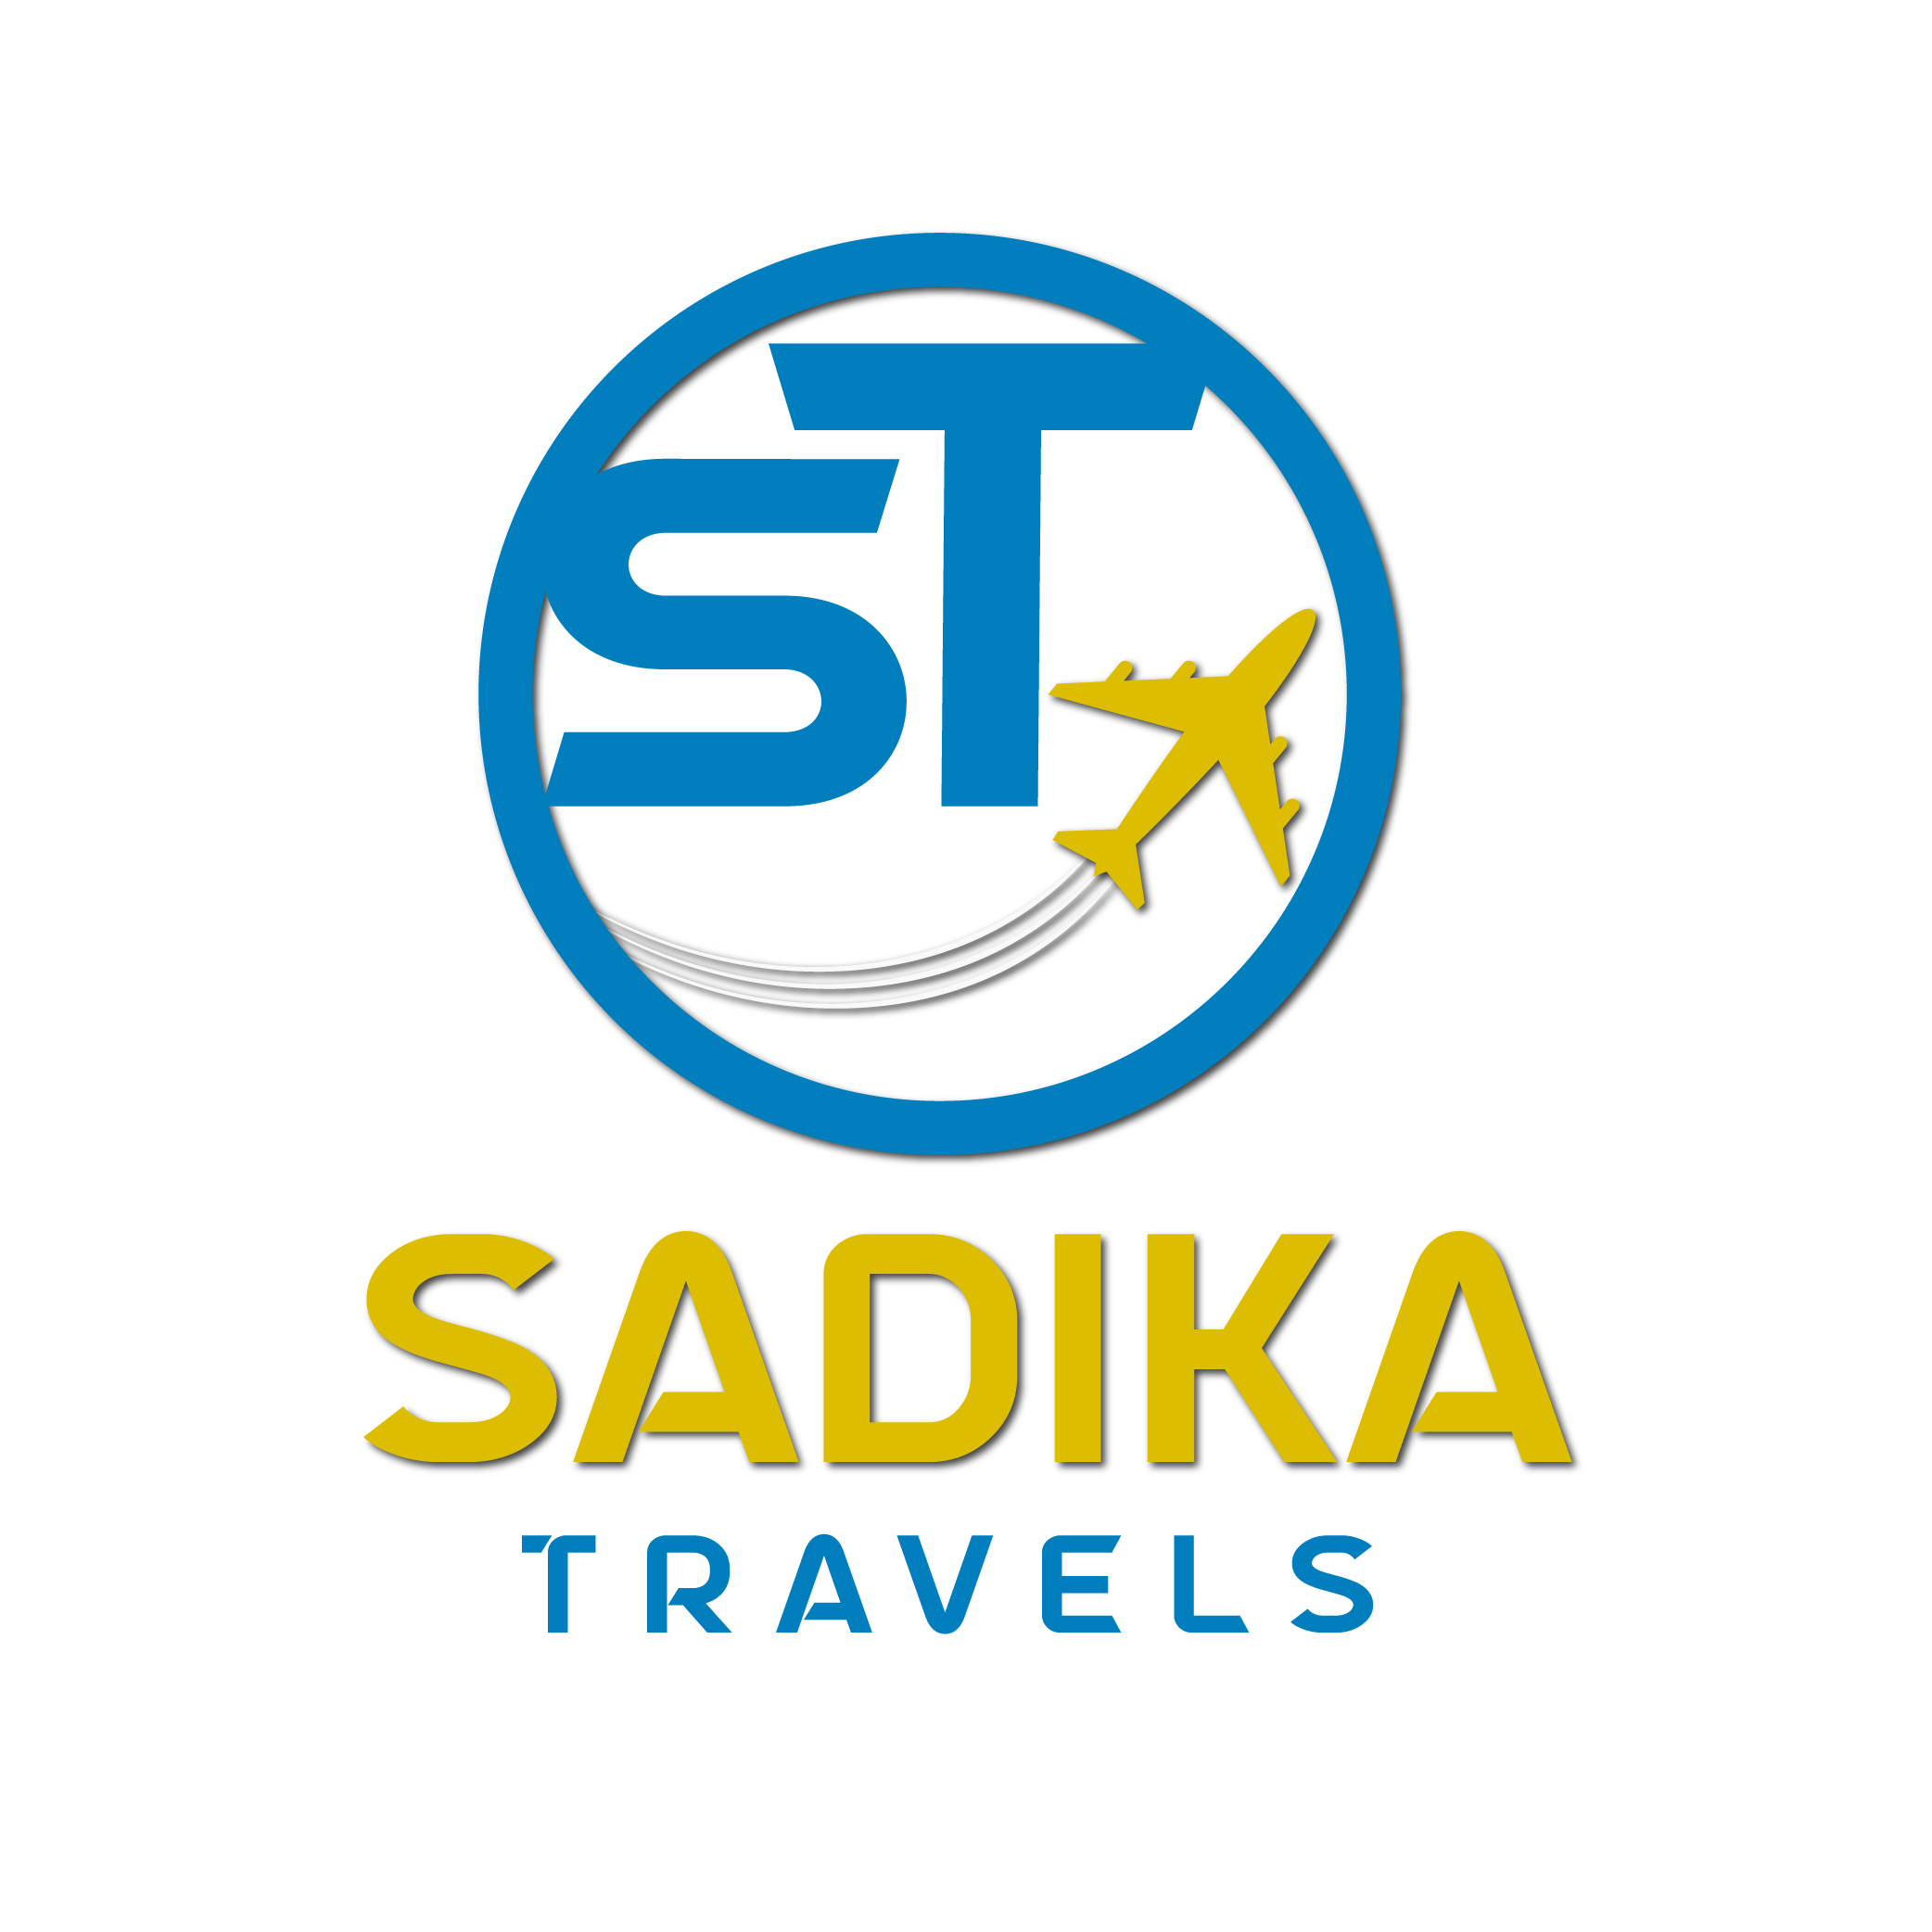 Sadika Travels-01.jpg